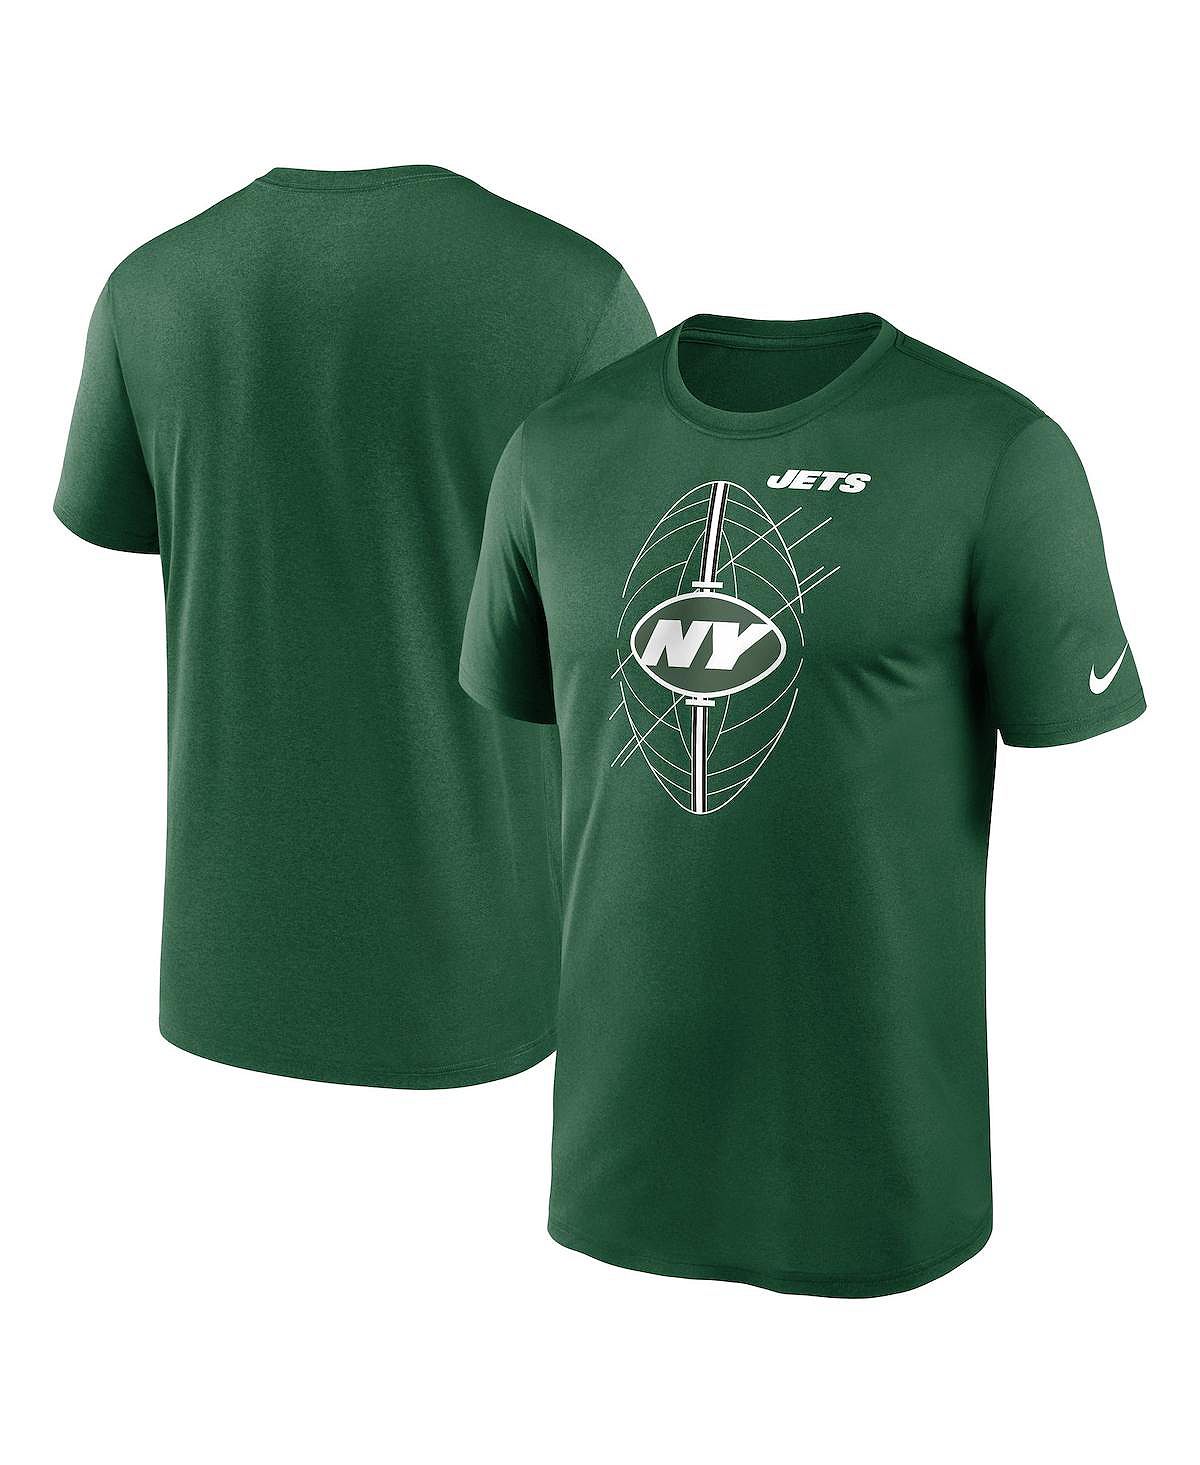 Мужская зеленая футболка New York Jets Legend Icon Performance Nike мужская футболка rj barrett grey new york knicks icon performance nike серый